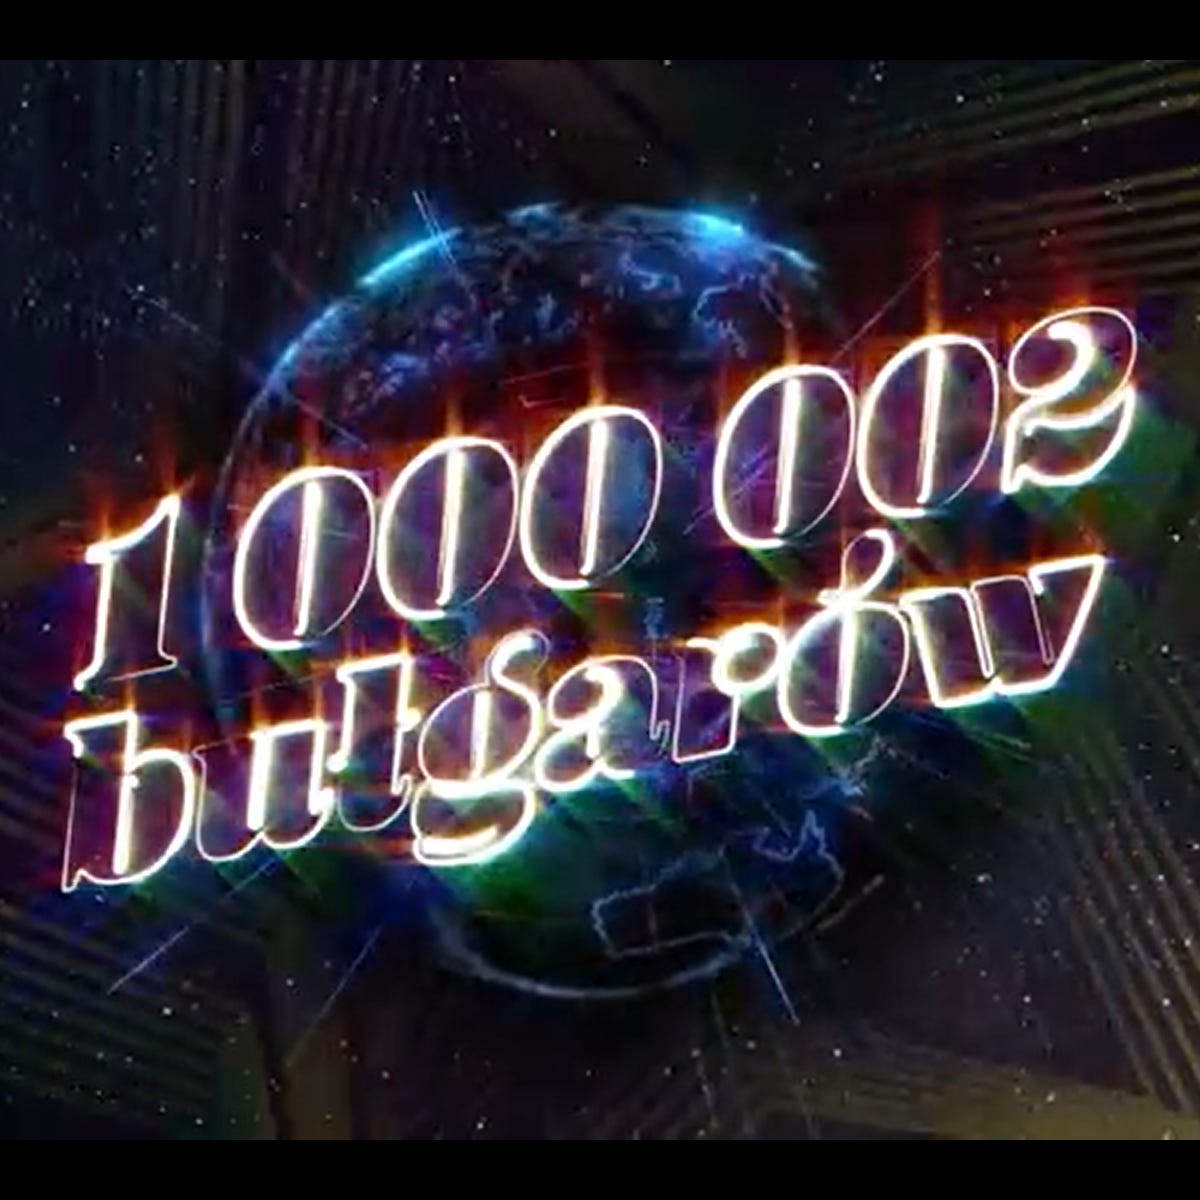 1000002bg